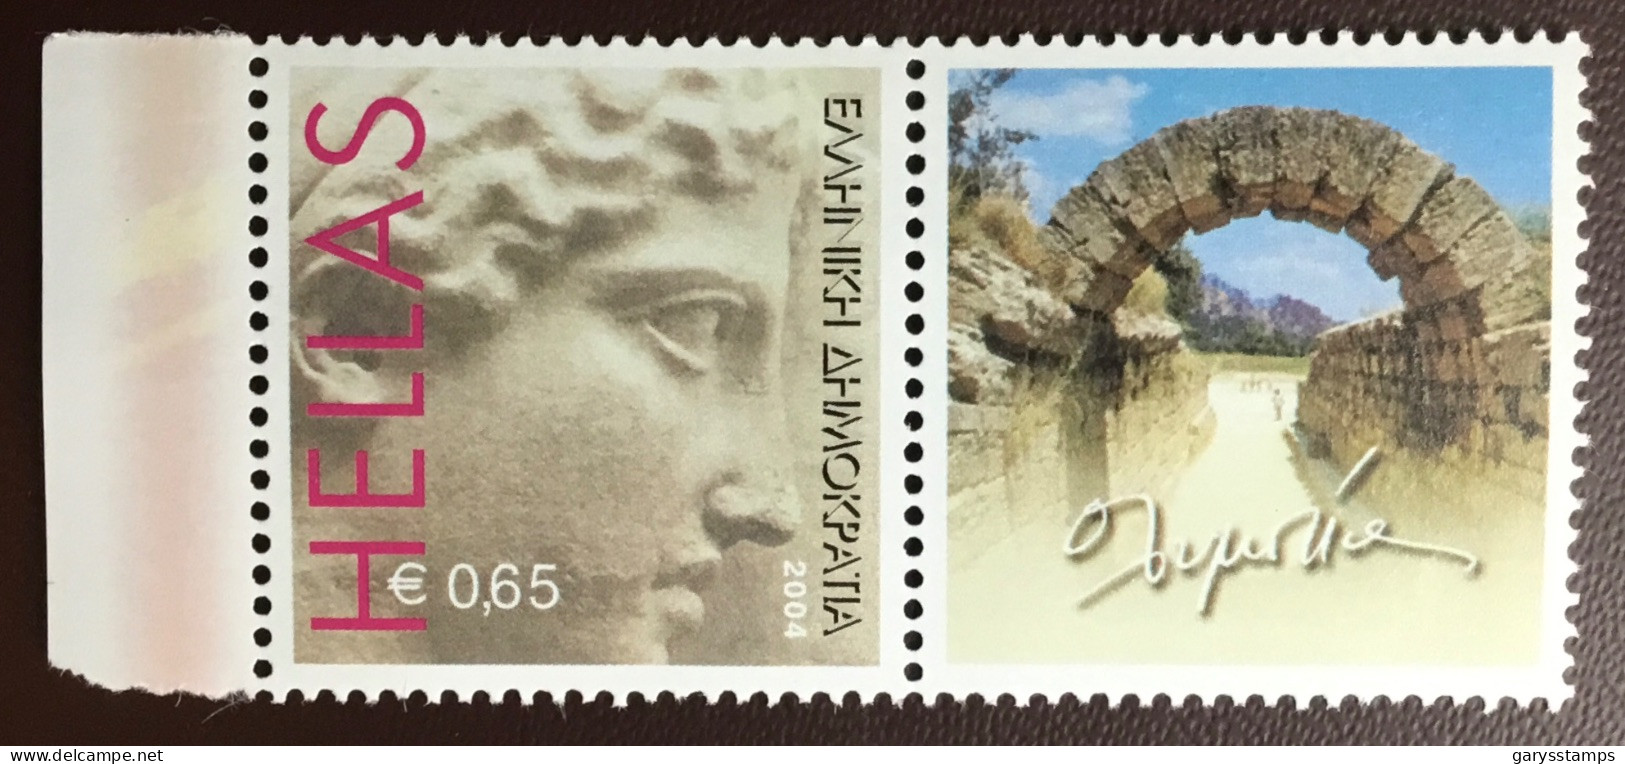 Greece 2003 Greetings Stamp MNH - Nuevos